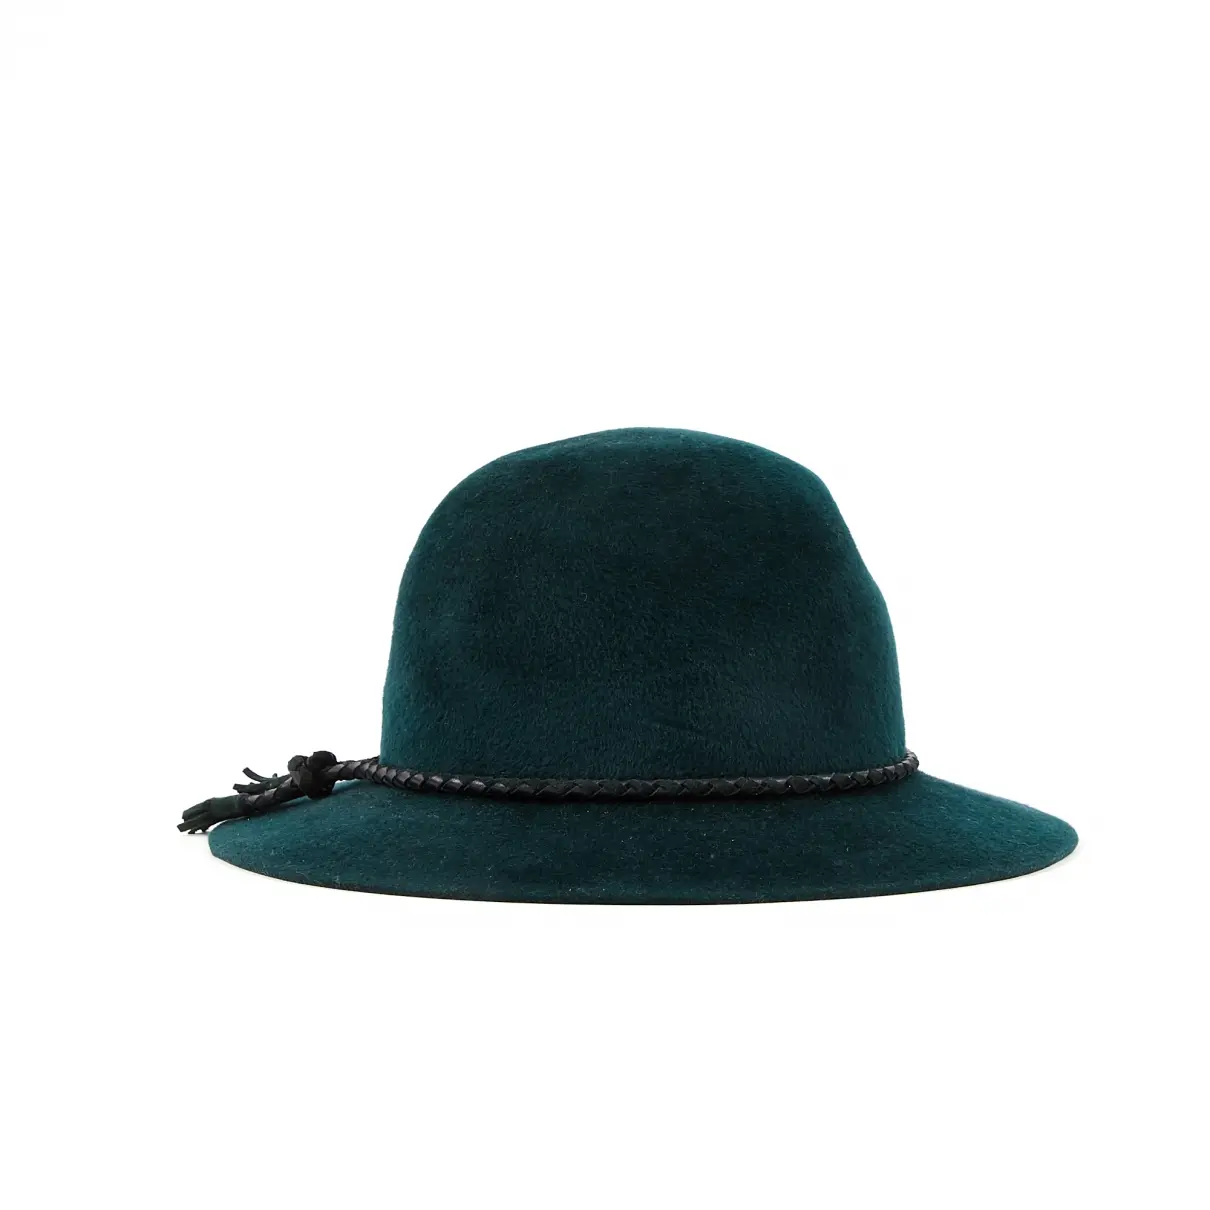 Hermès Wool hat for sale - Vintage